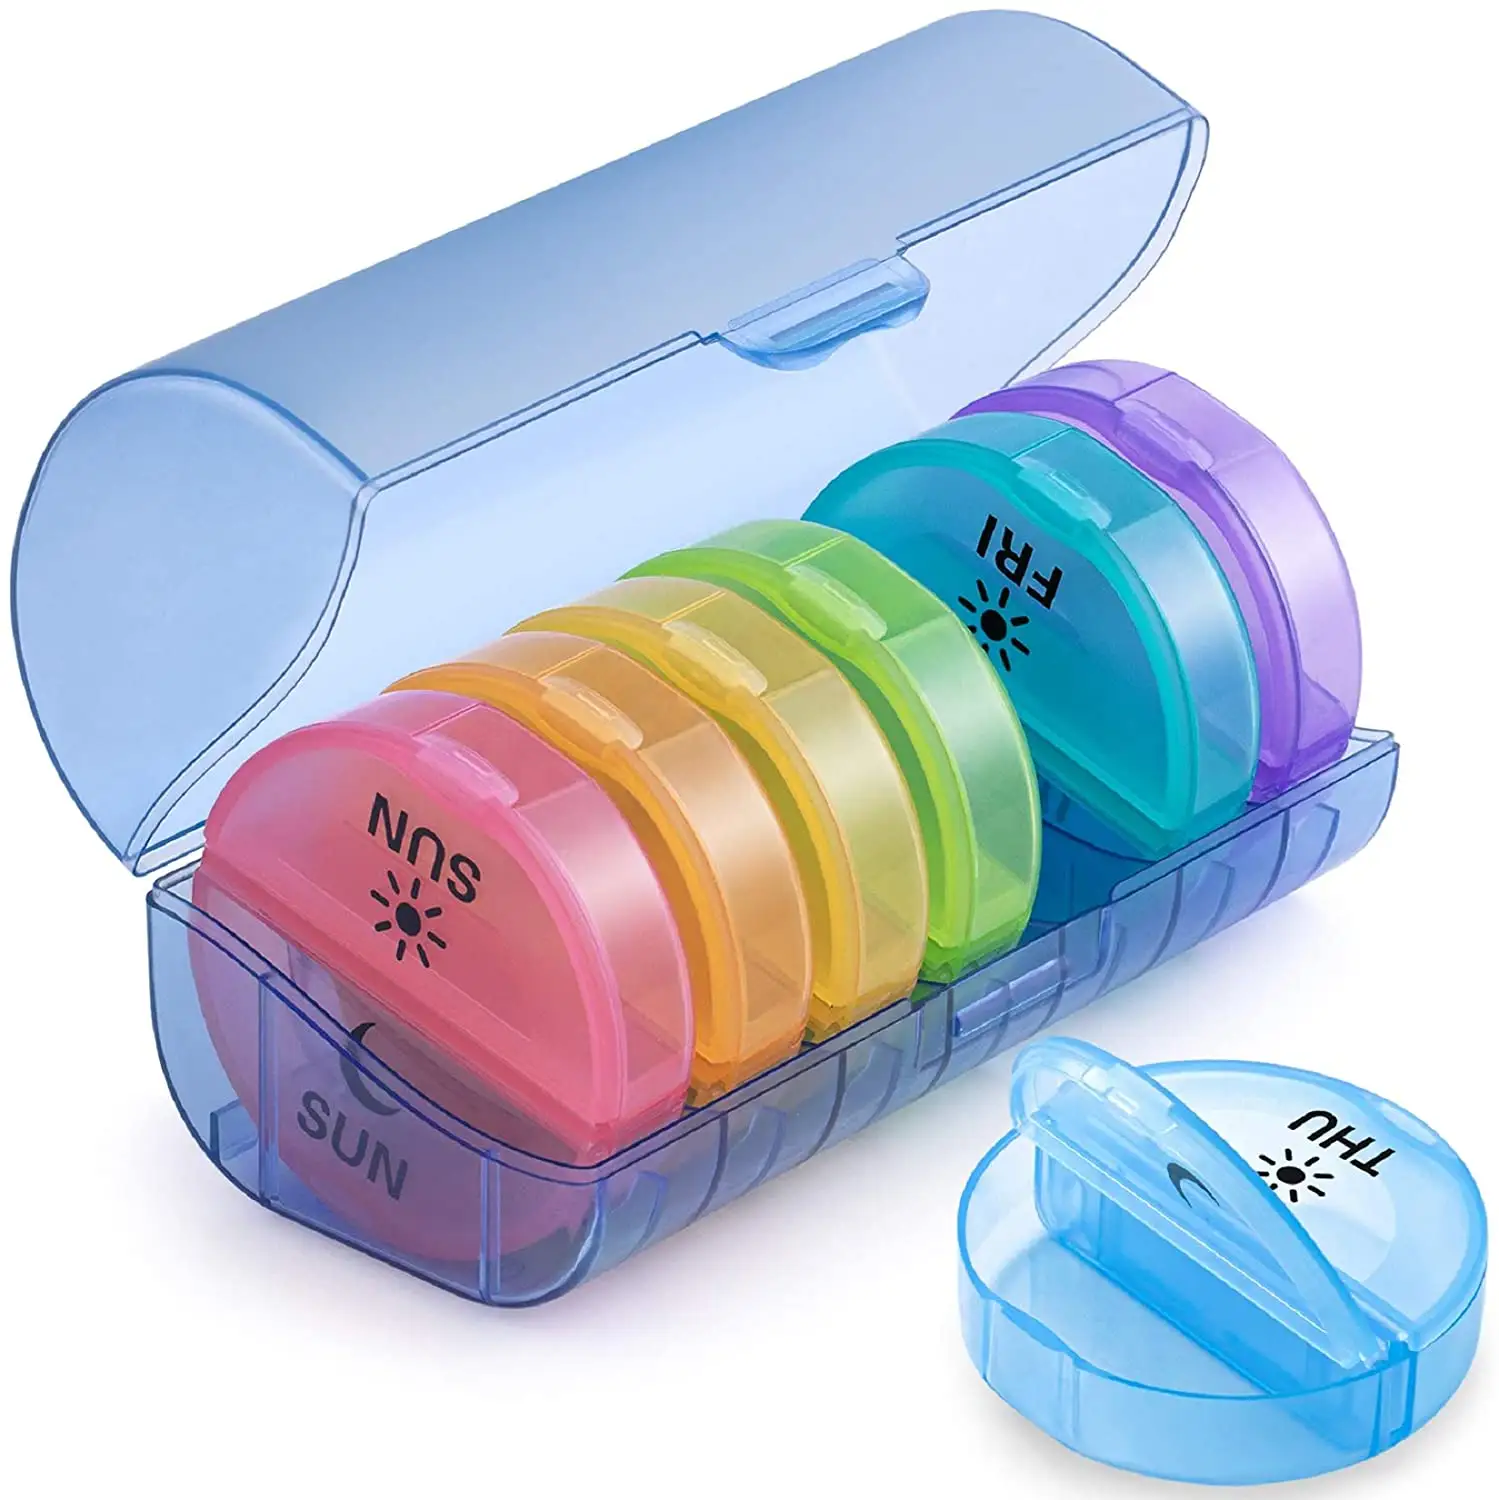 Yuvarlak renkli günlük haftalık hap konteyner kutusu tıp için